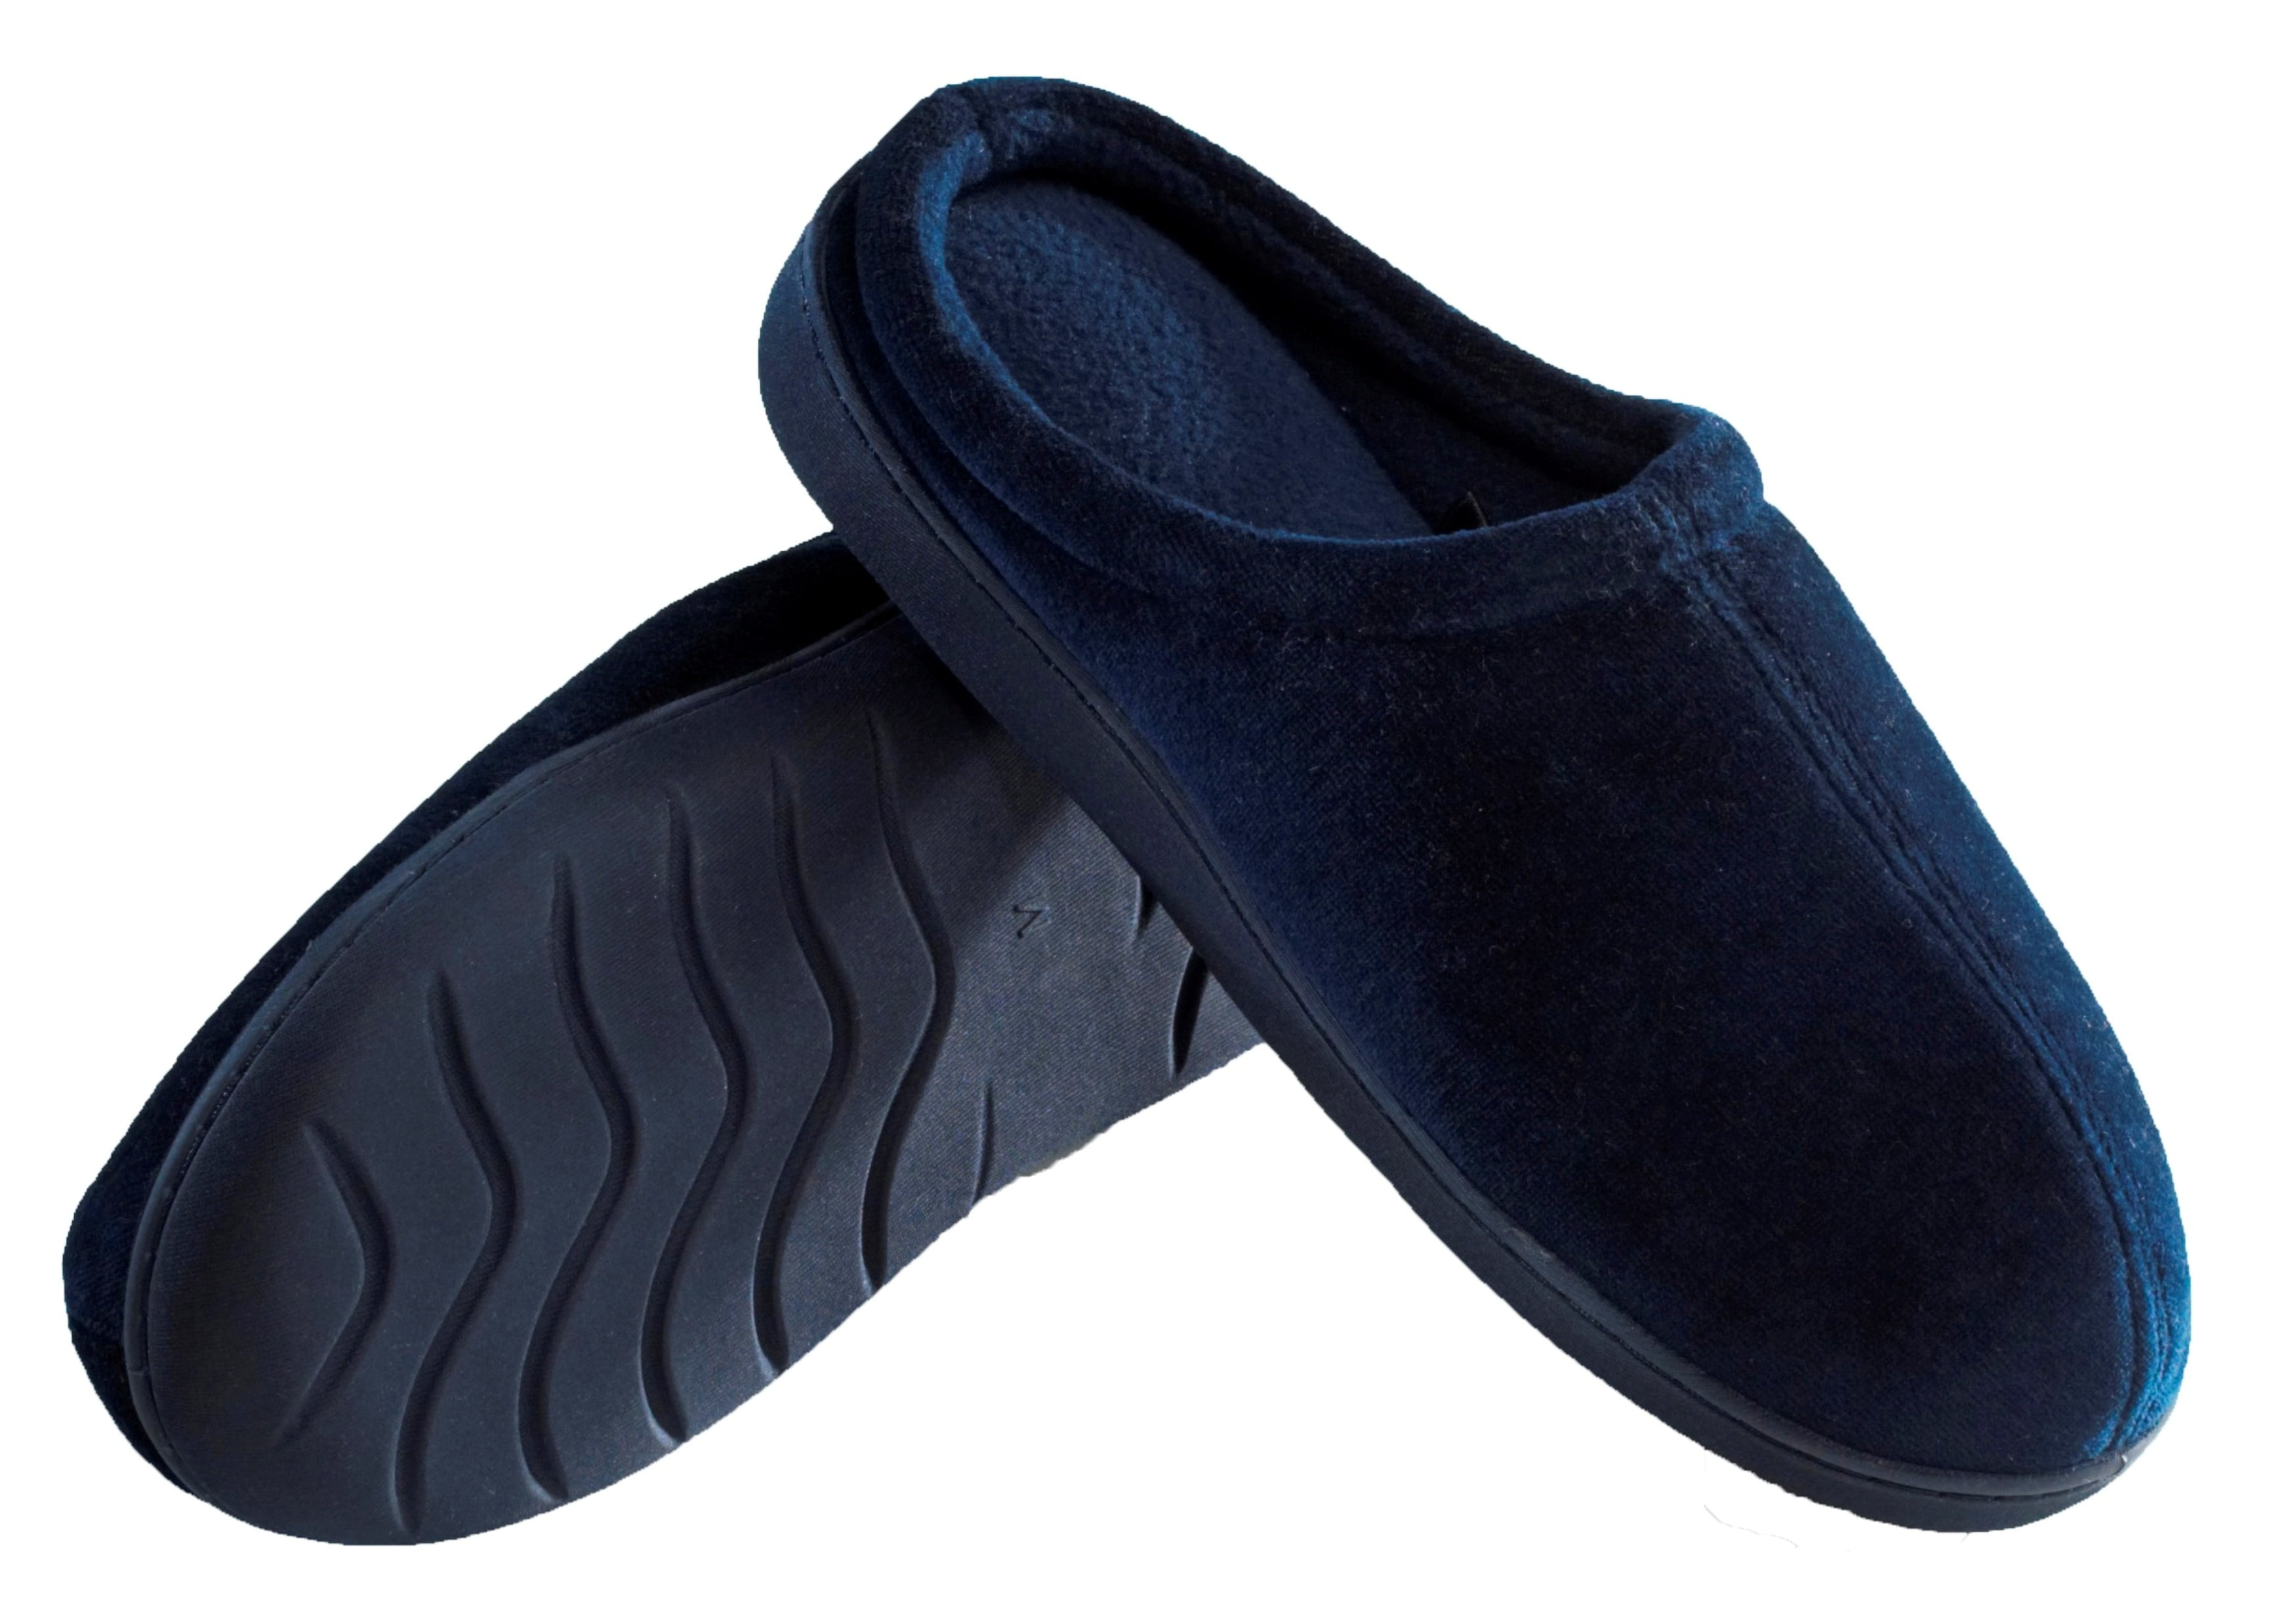 Deluxe Comfort Men's Indoor/Outdoor Slip-On Memory Foam House Slippers ...